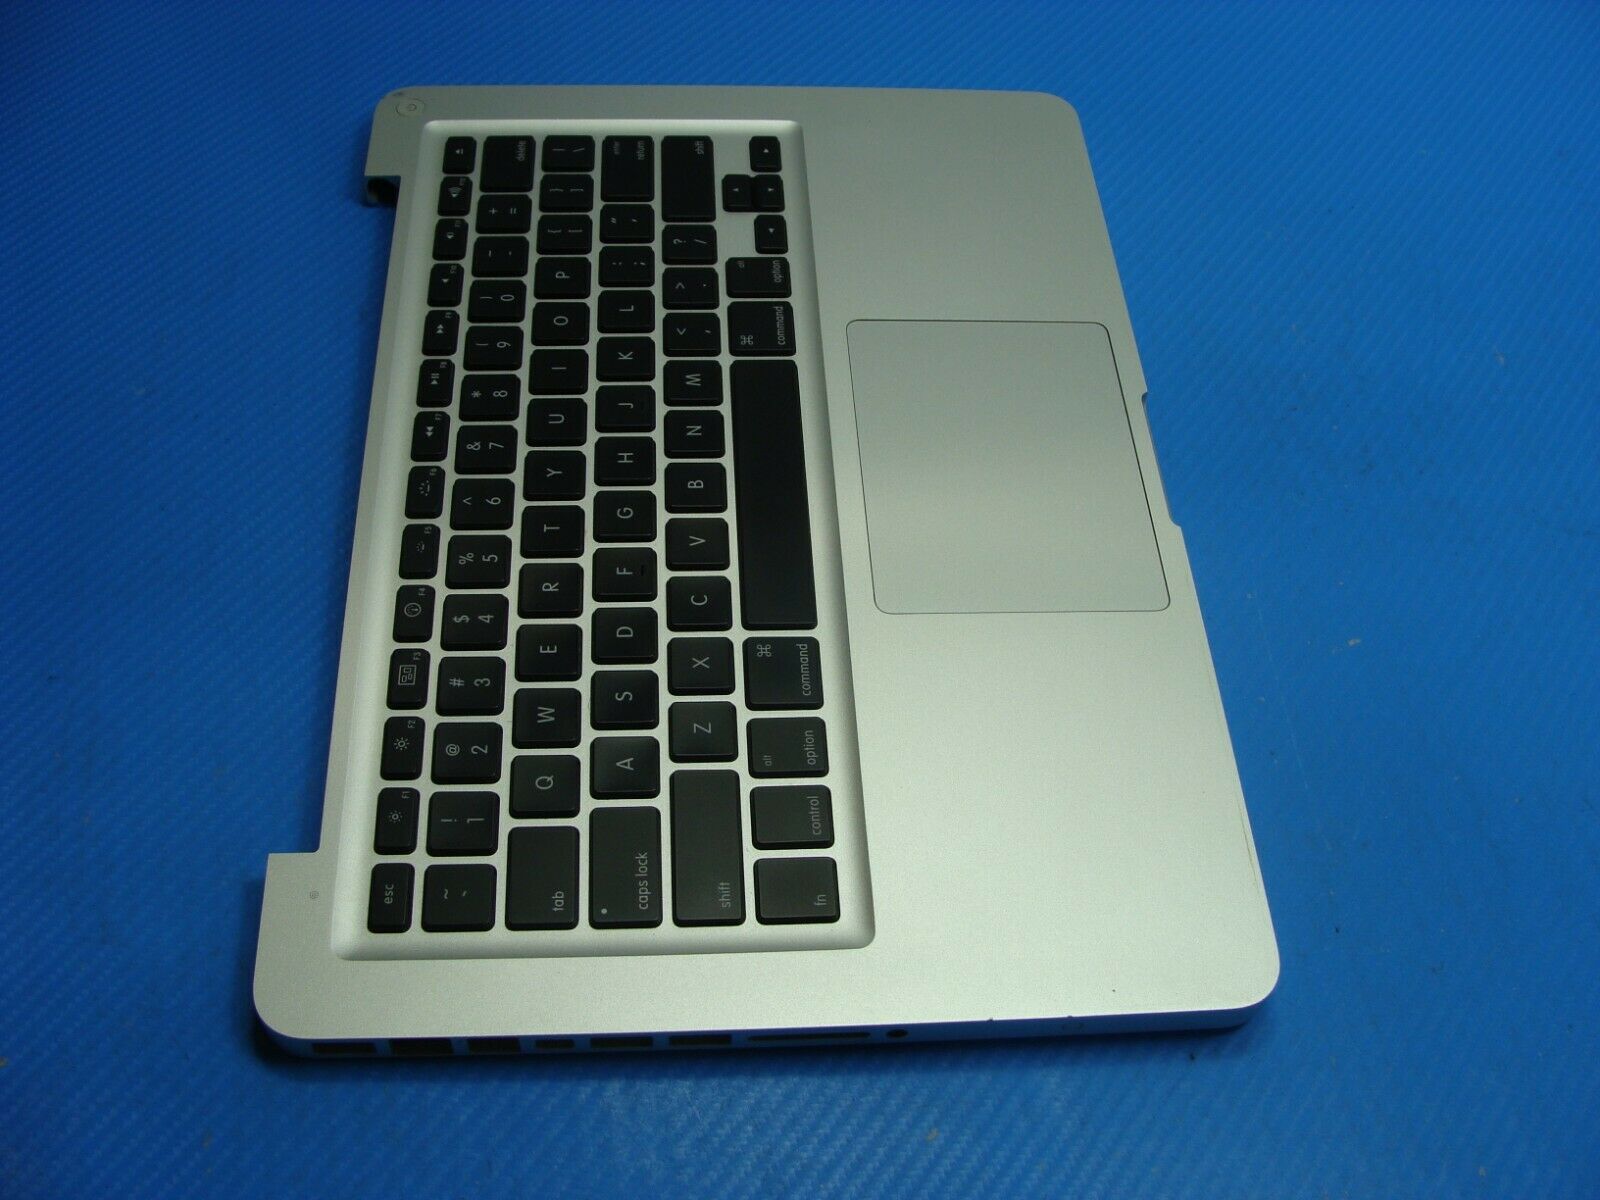 MacBook Pro A1278 MB990LL/A Mid 2009 13